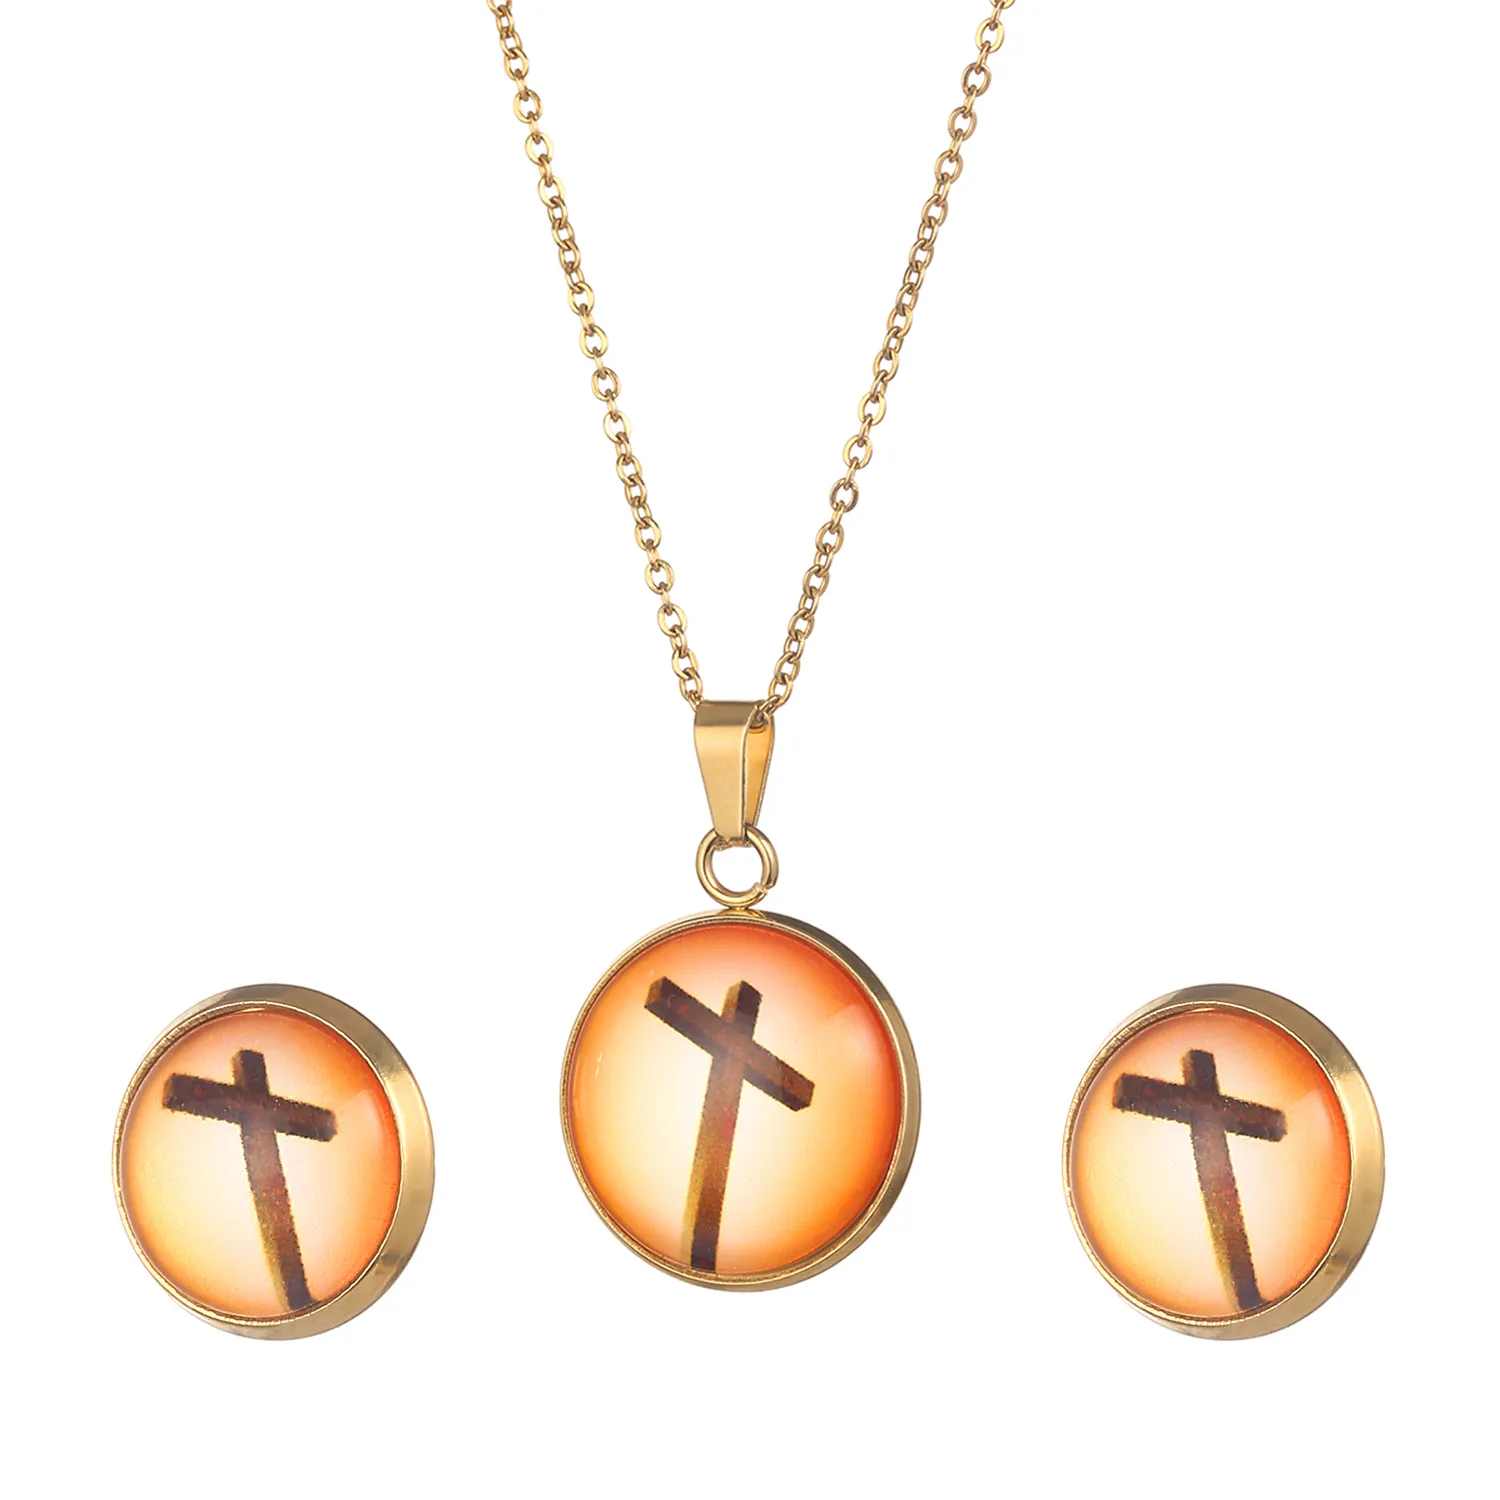 Collana con croce cristiana di Gesù, in acciaio inossidabile, con pendenti con croce di preghiera in oro, set di gioielli da uomo